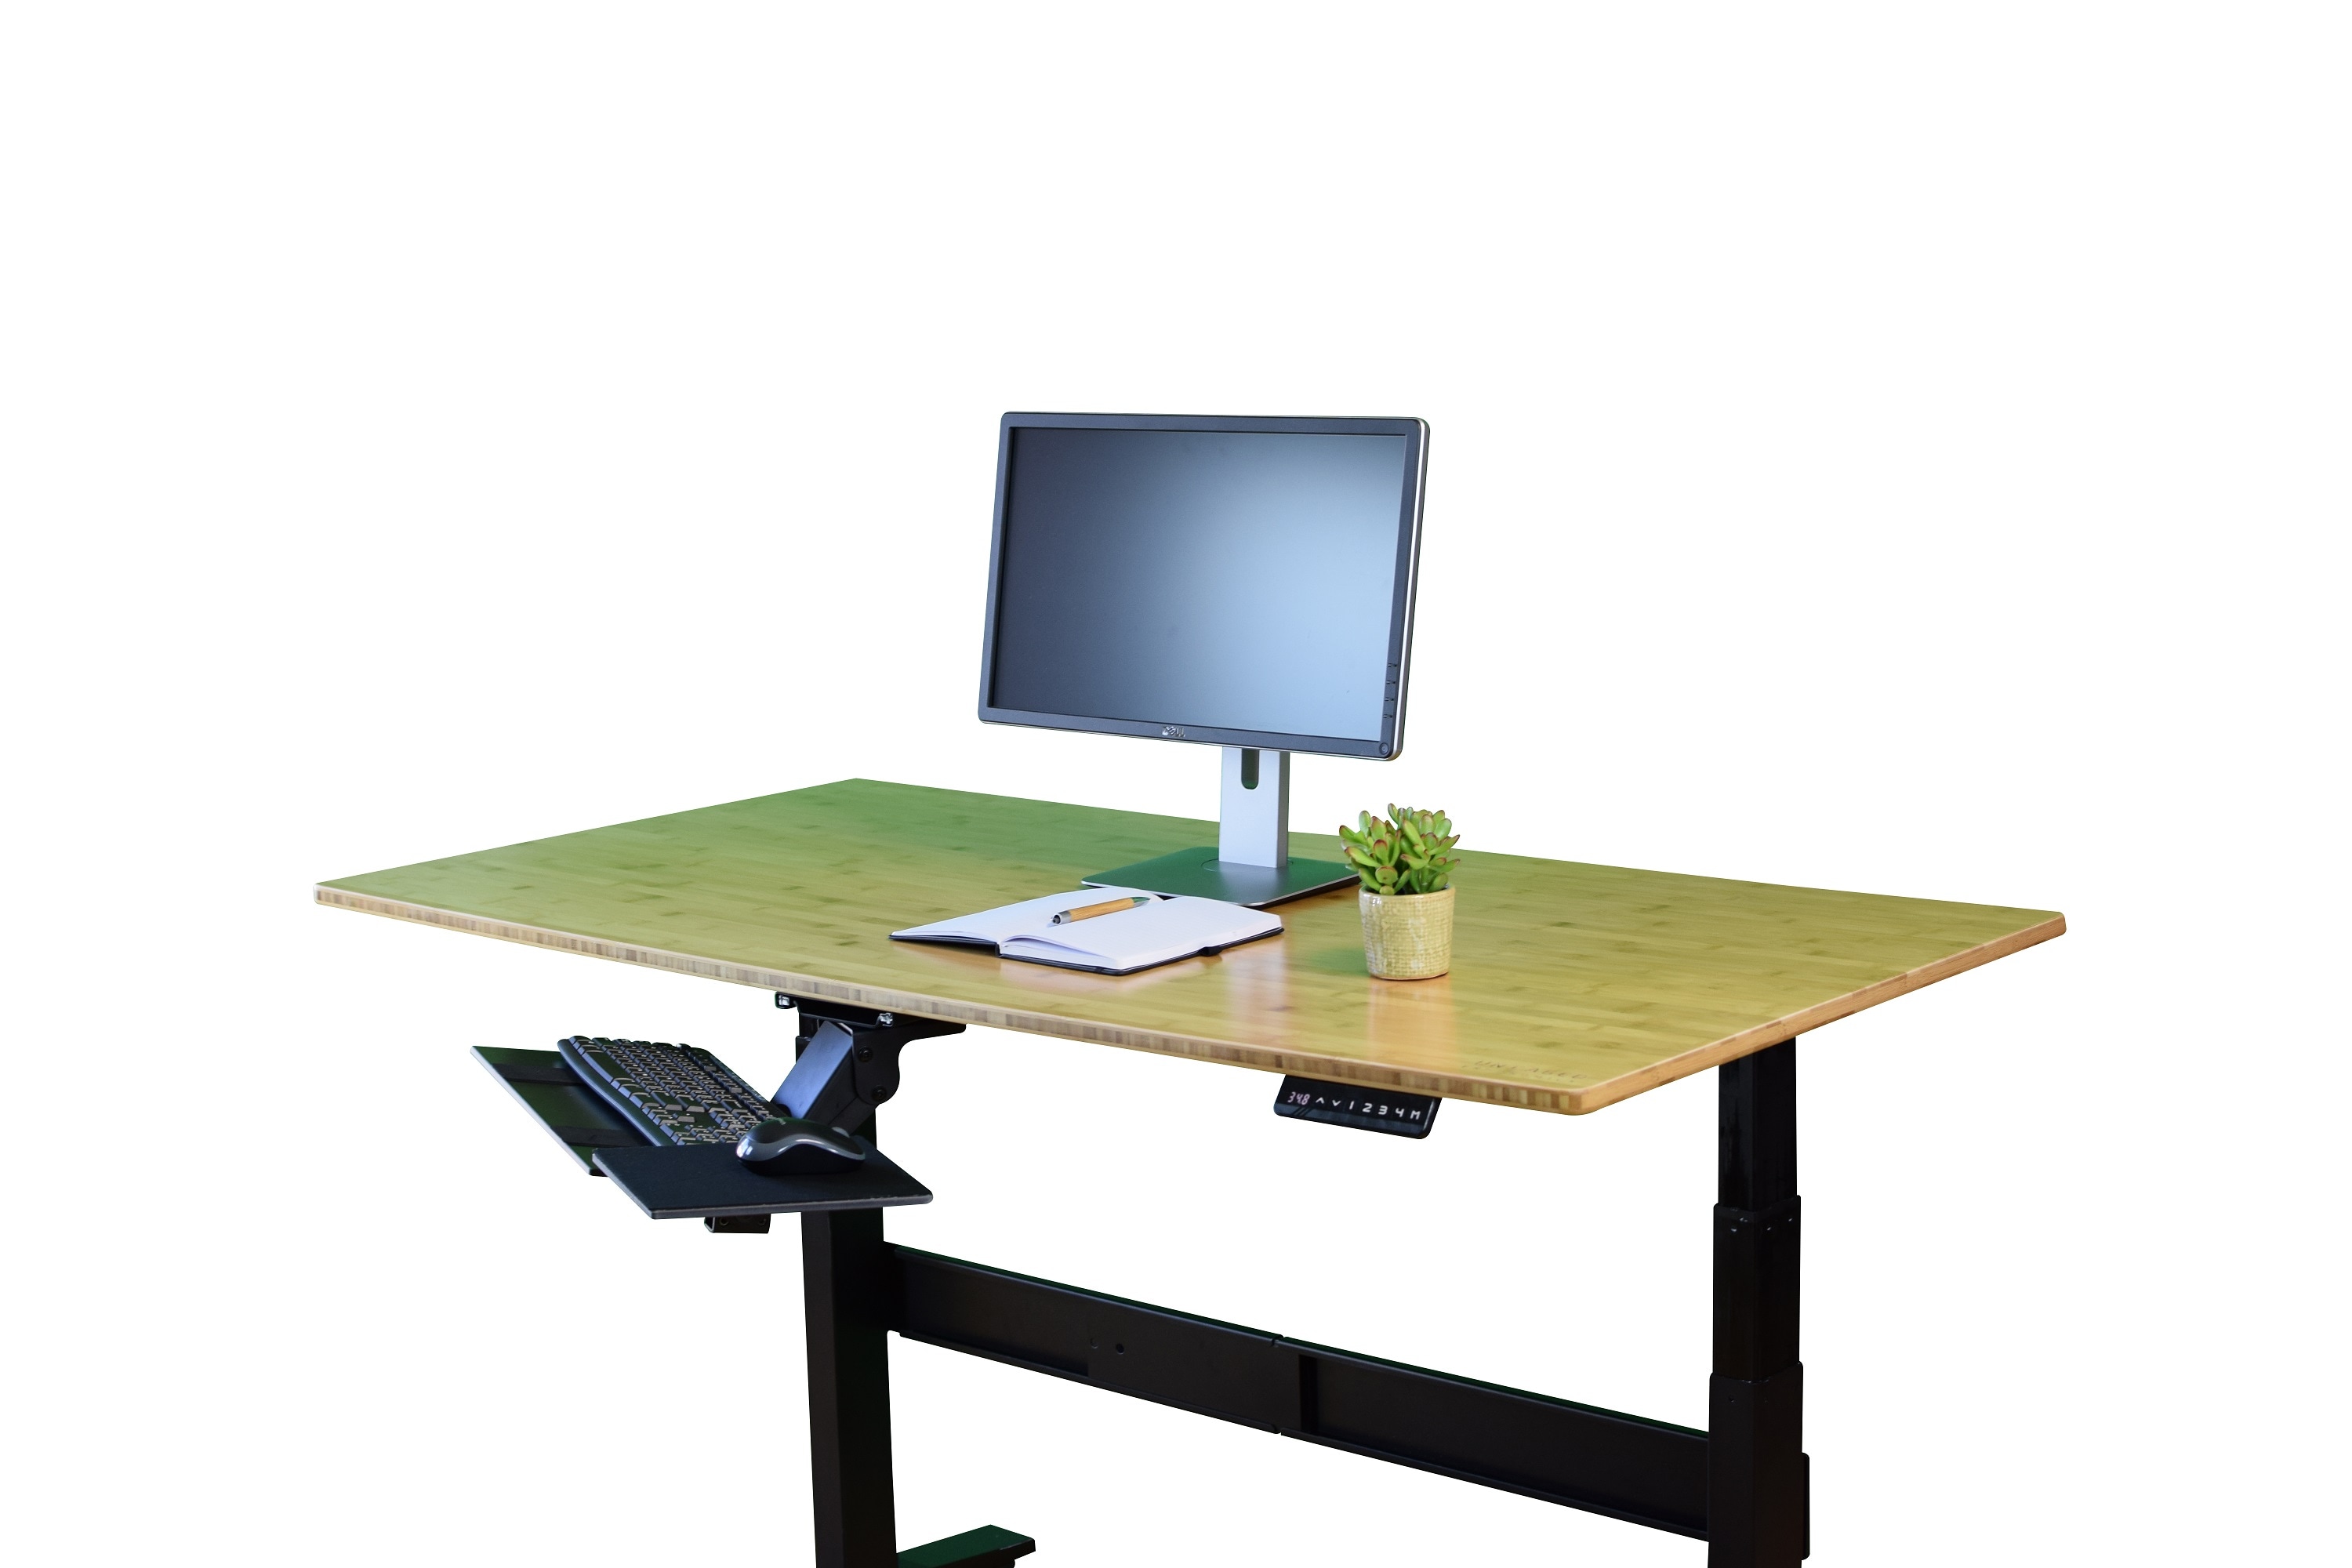 KT2 Ergonomic Sit Stand Under-Desk Computer Keyboard Tray for Standing  Desks accessories holder large adjustable height range angle negative tilt